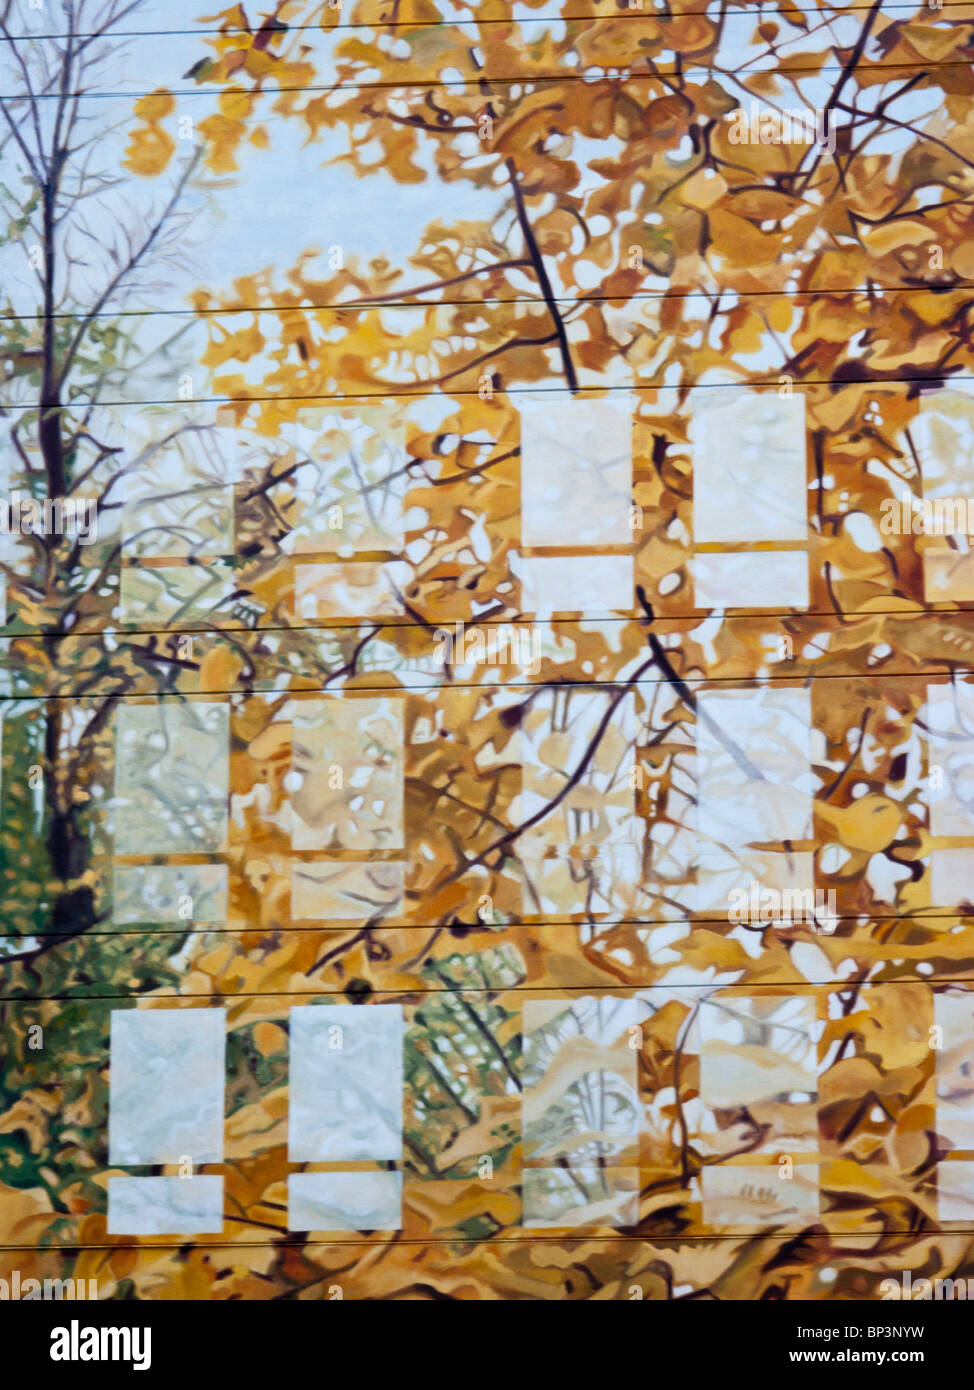 Le trompe-l'oeil sur mur côté ouest de Manhattan bâtiment avec windows reflétant les feuilles d'automne sur les branches entrelacées Banque D'Images